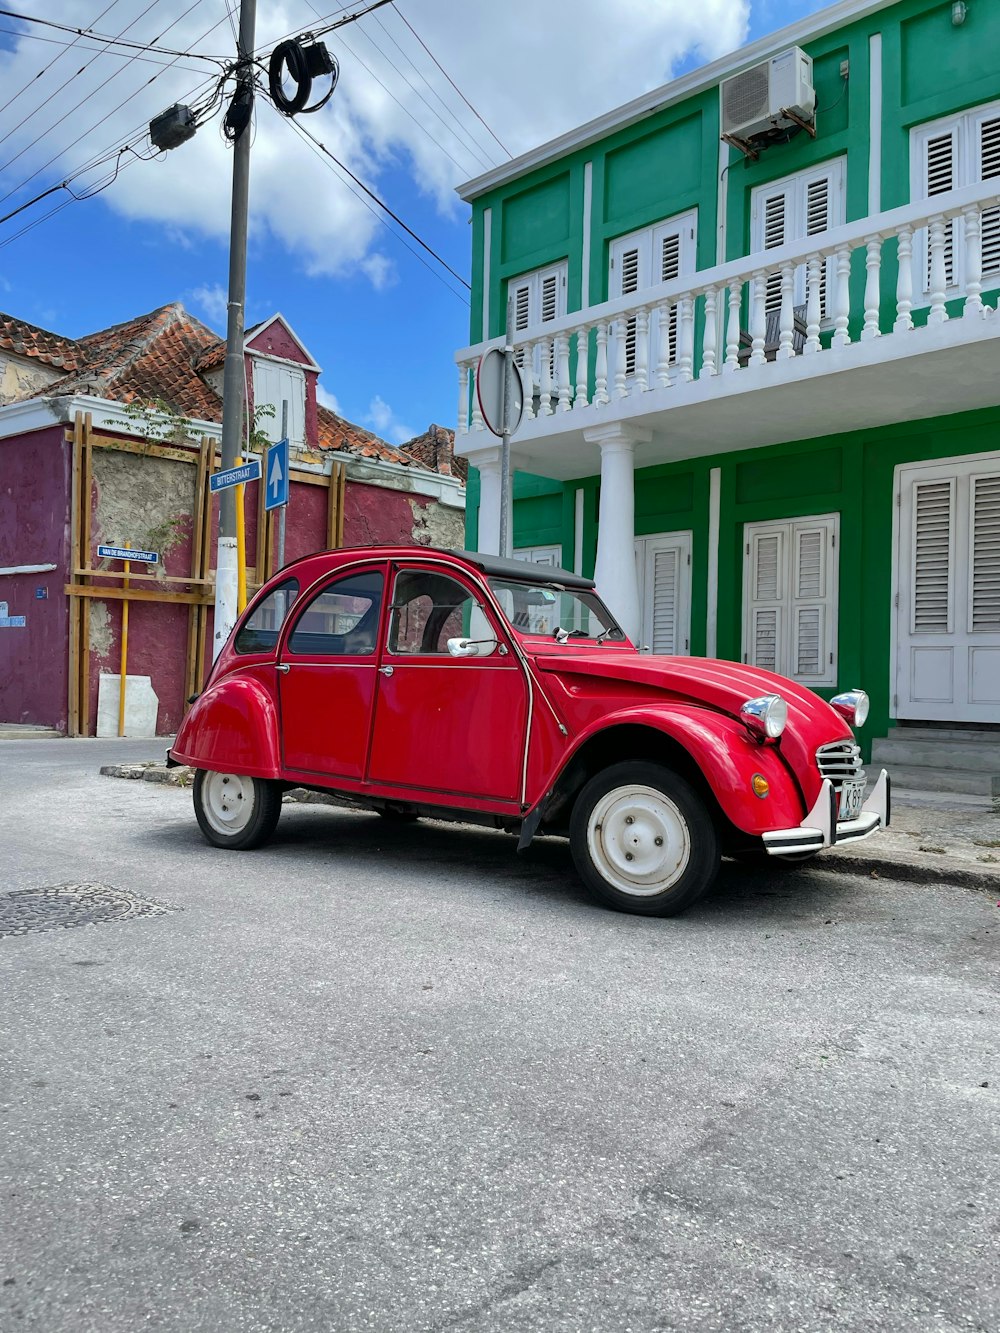 Une voiture rouge garée dans une rue